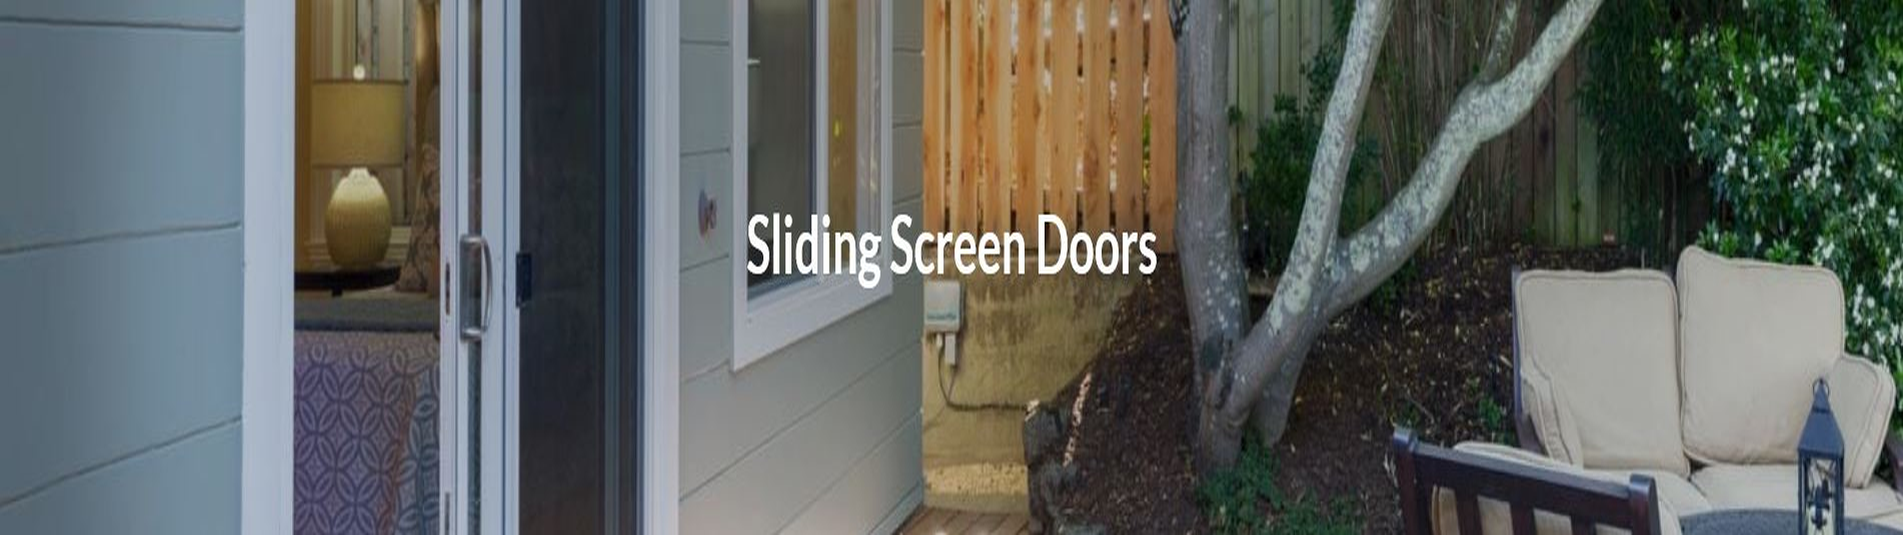 Sliding Screen Doors